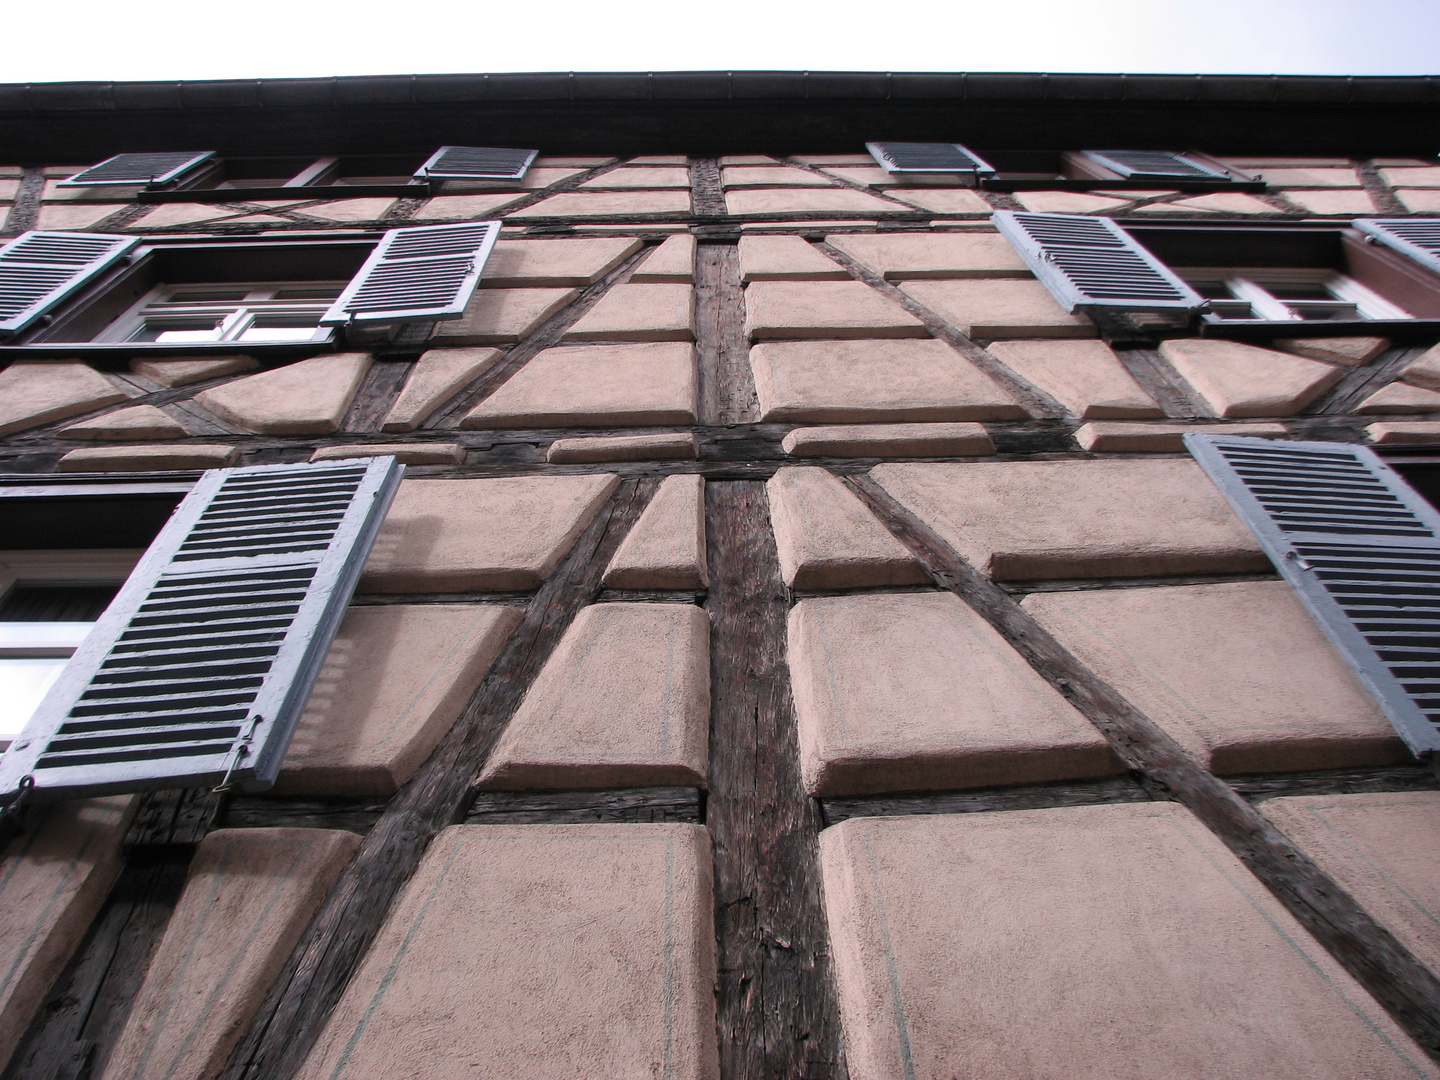 Mittelalterliche Hausfassade in Fachwerkbauweise